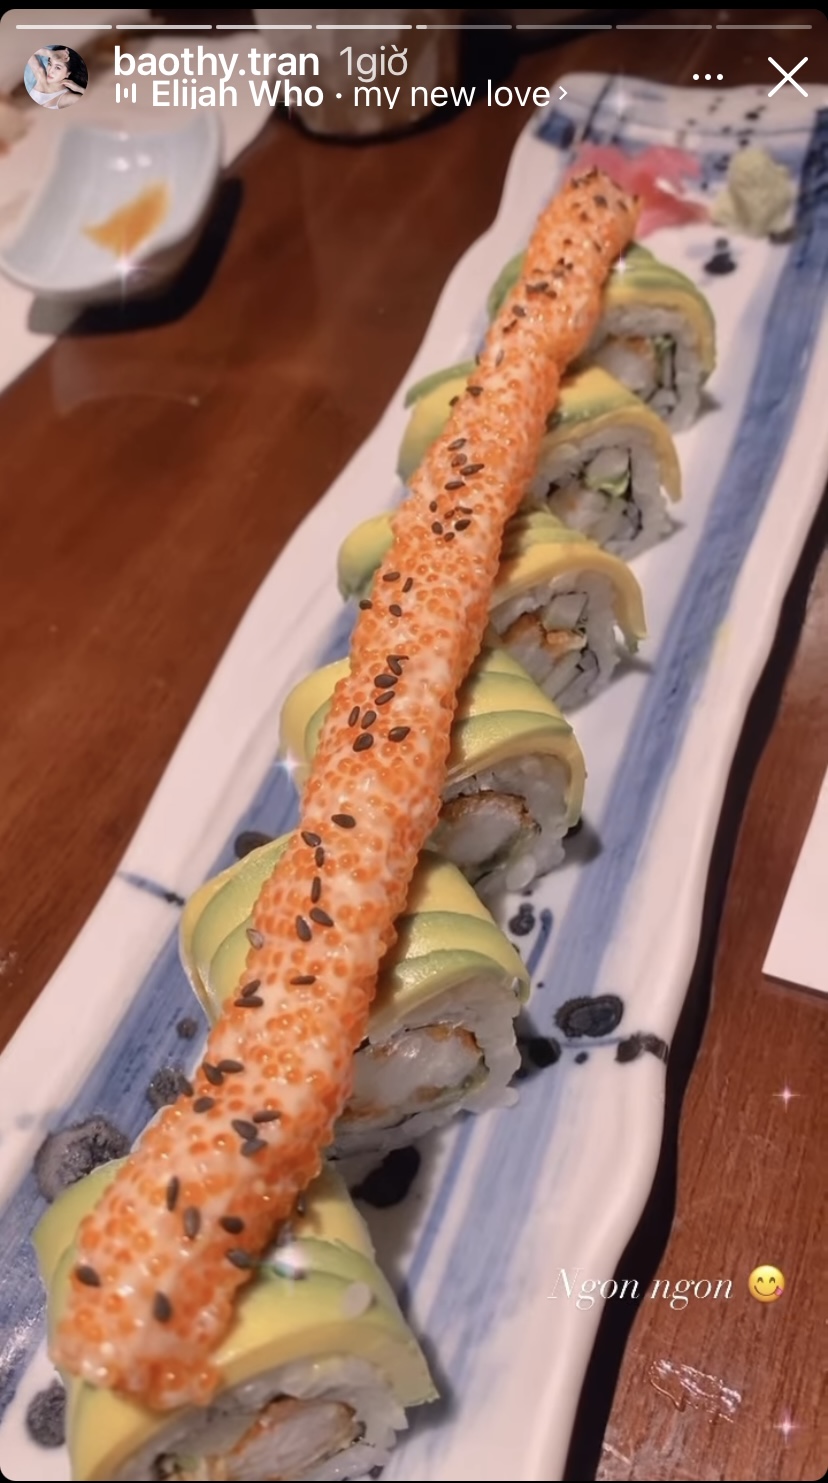 Bên cạnh đĩa sashimi tươi ngon, cô còn có những miếng sushi ngon ứa nước miếng.